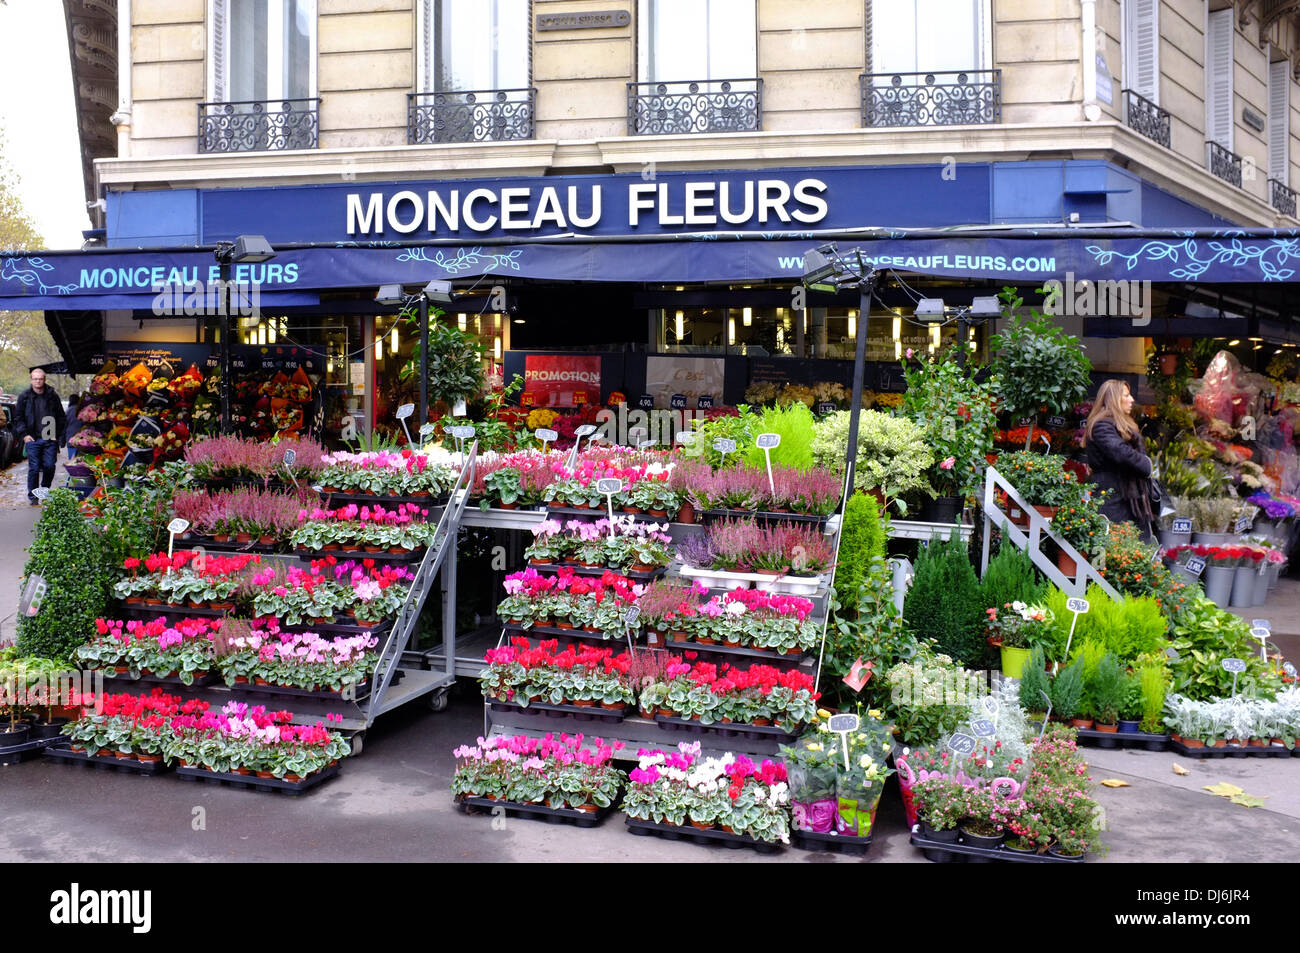 Monceau Fleurs, boutique de fleurs à Paris, France Banque D'Images